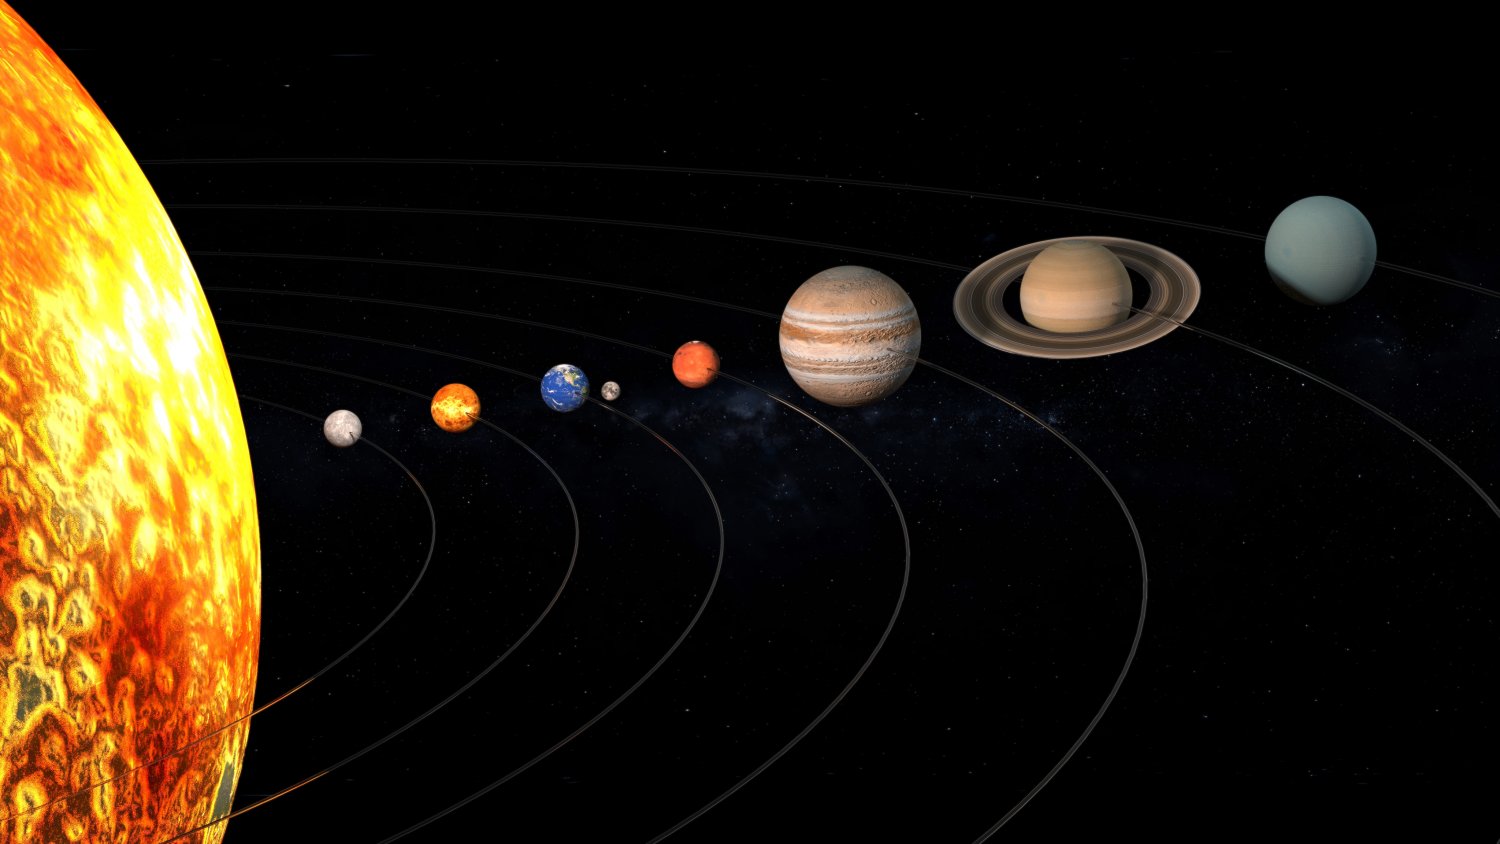 фото планет солнечной системы высокого разрешения